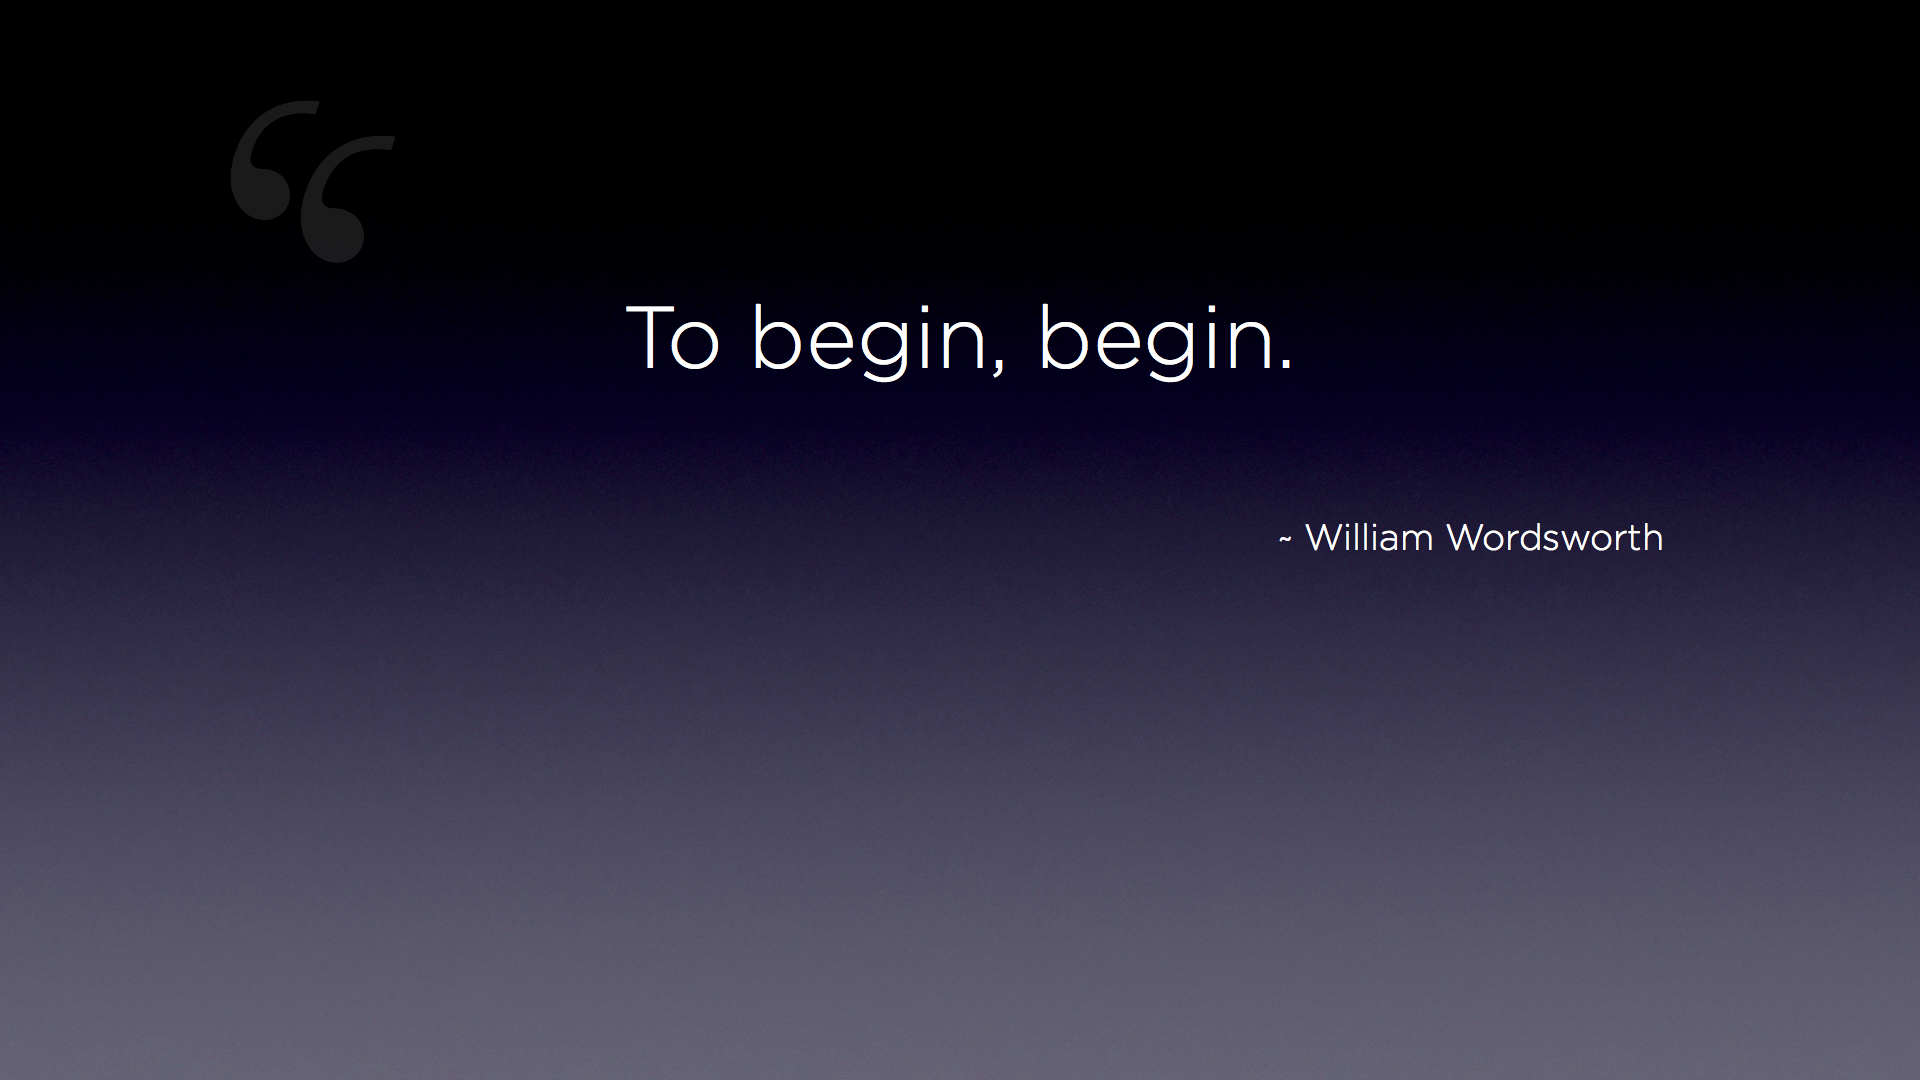 Wordsworth Quote: "To begin, begin."